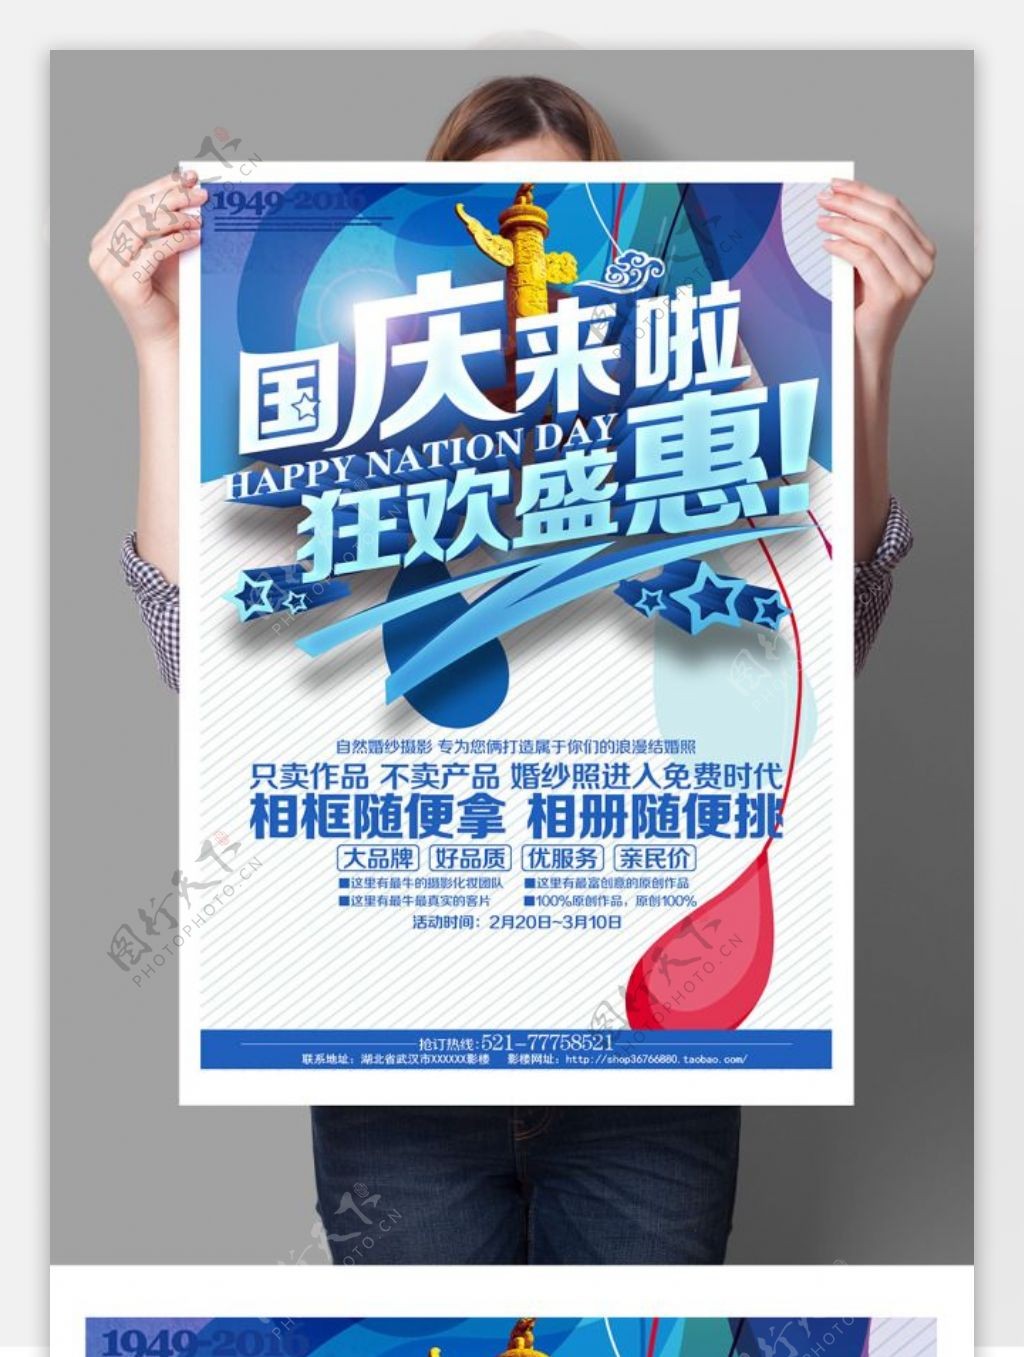 狂欢盛惠国庆节促销活动海报背景DM